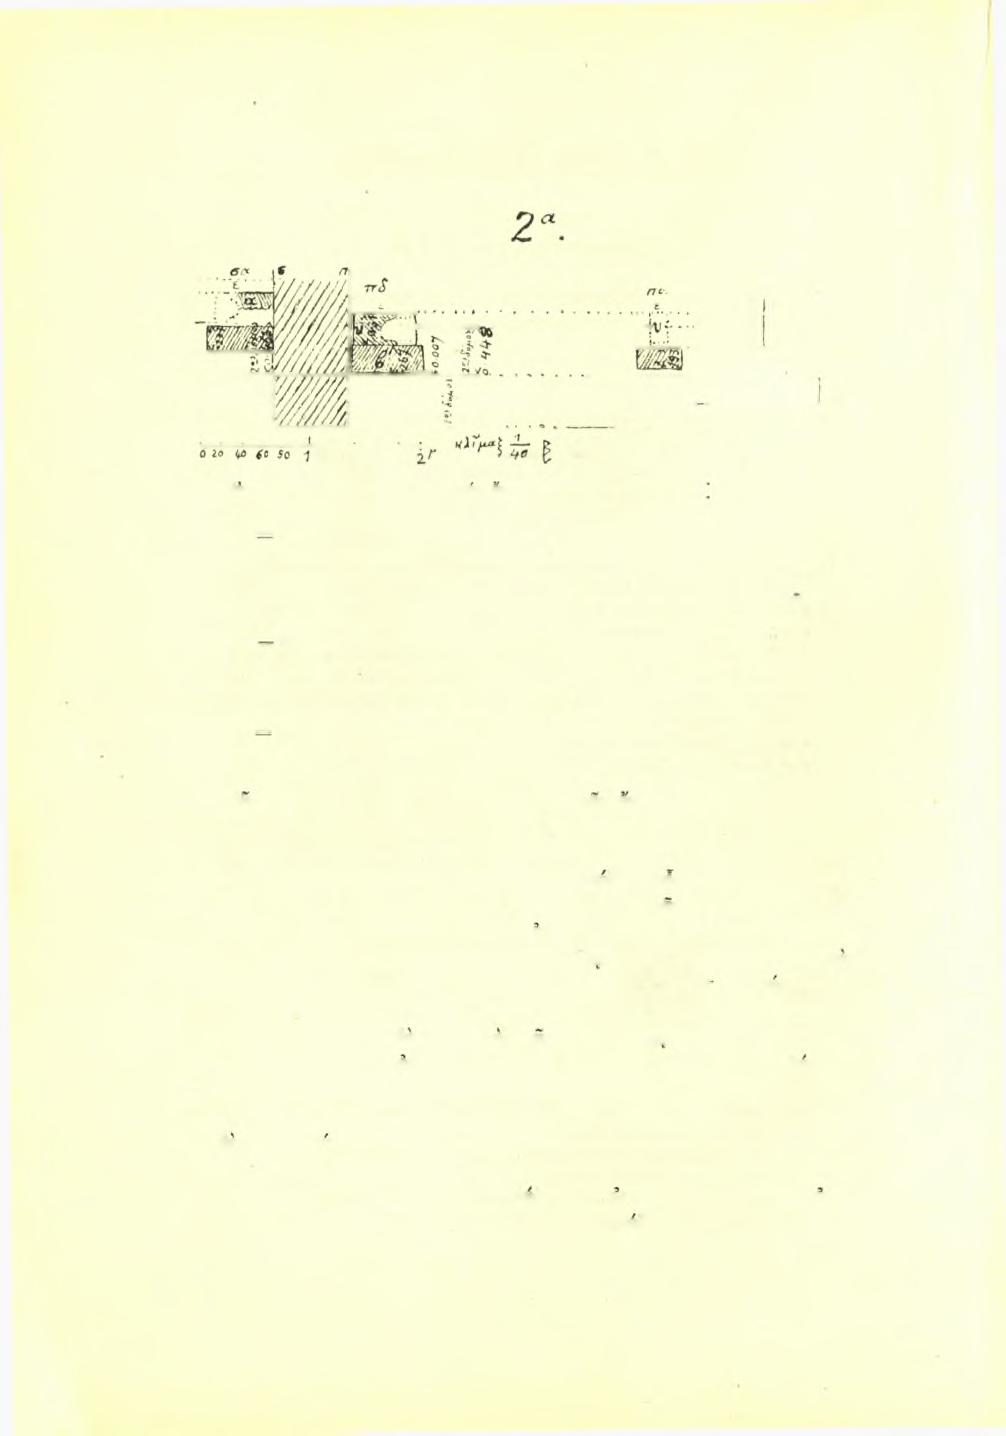 42 Πρακτικά τής 'Αρχαιολογικής Εταιρείας 1928 2α (ορθογραφία τών έν είκ. 2- νοτιά οψις): σηκοϋ καί προδόμου θρανίων δυσμανατολική τομή.